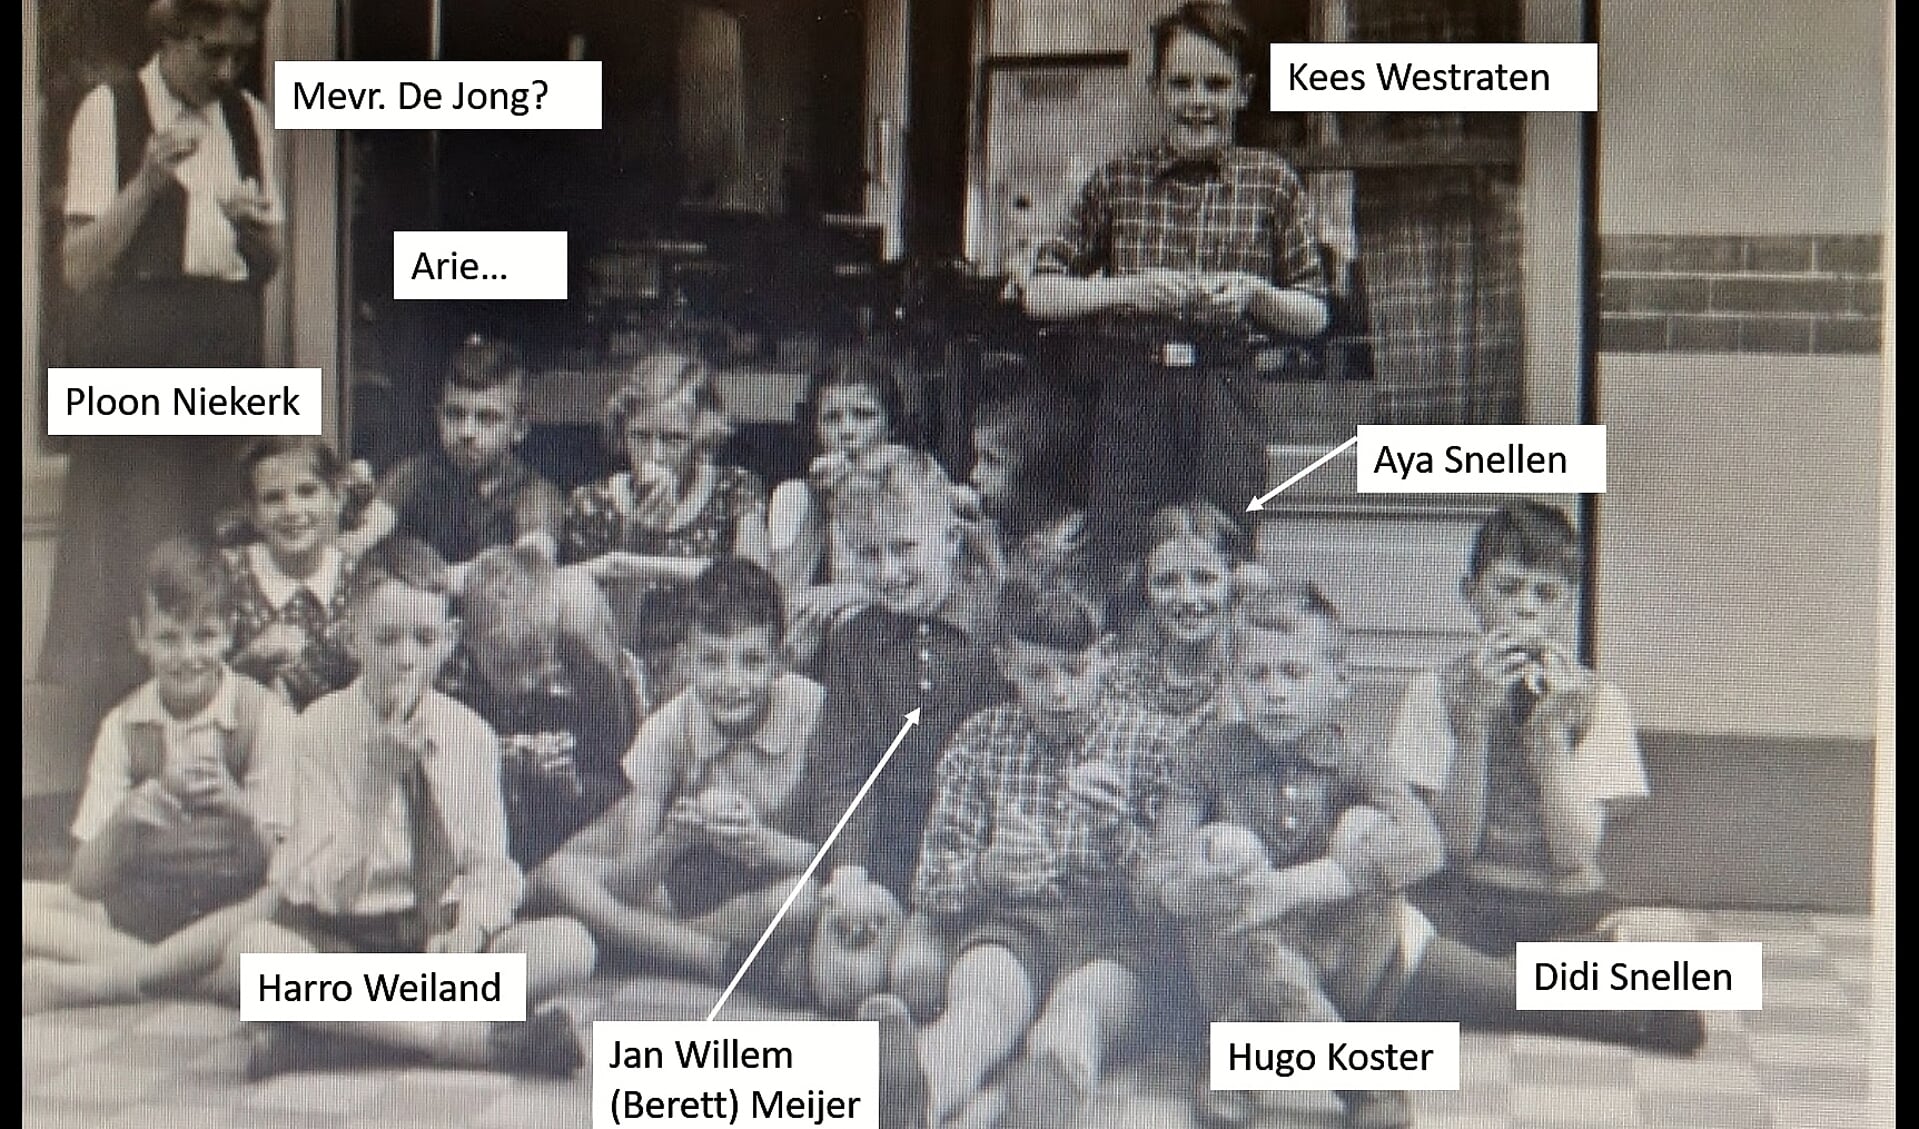 Klassenfoto van de Oegstgeester Montessorischool in de jaren '40.